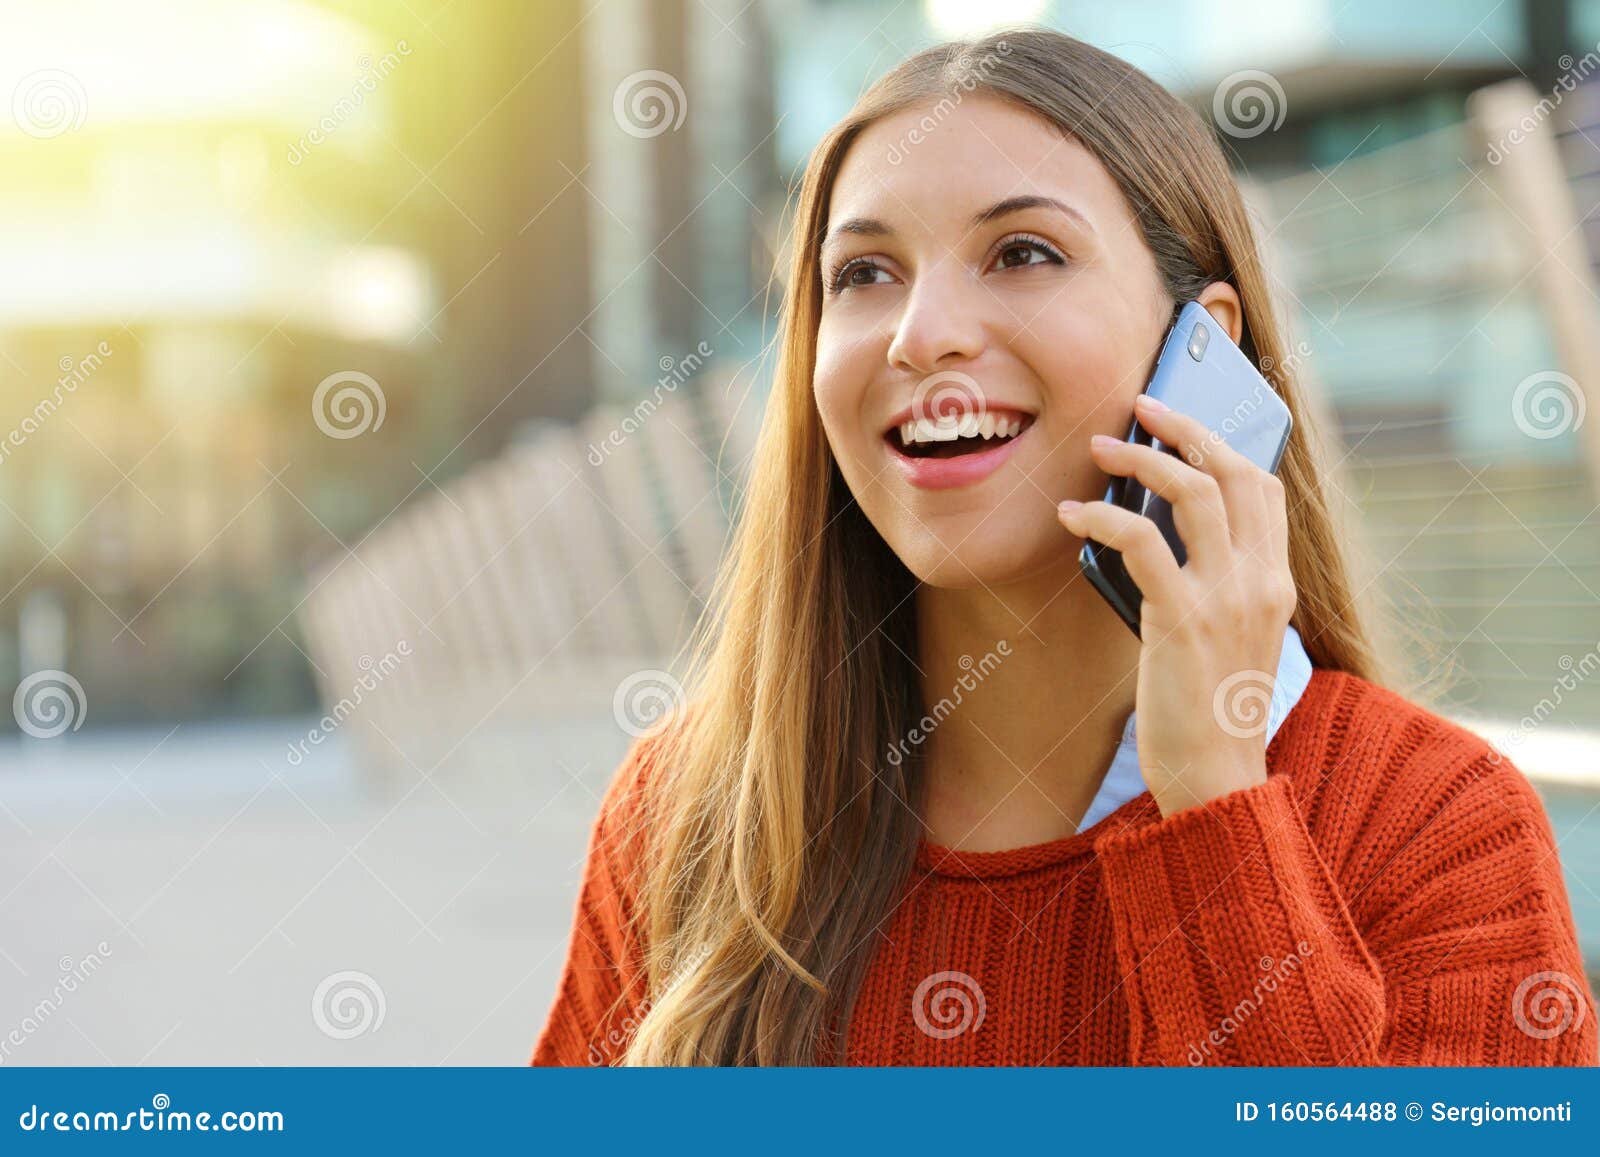 Изменяя разговаривает по телефону видео. Девушка со смартфоном у уха. Девушка разговаривает по айфону. Девушка с телефоном около уха. Смартфон у уха радостная девушка.